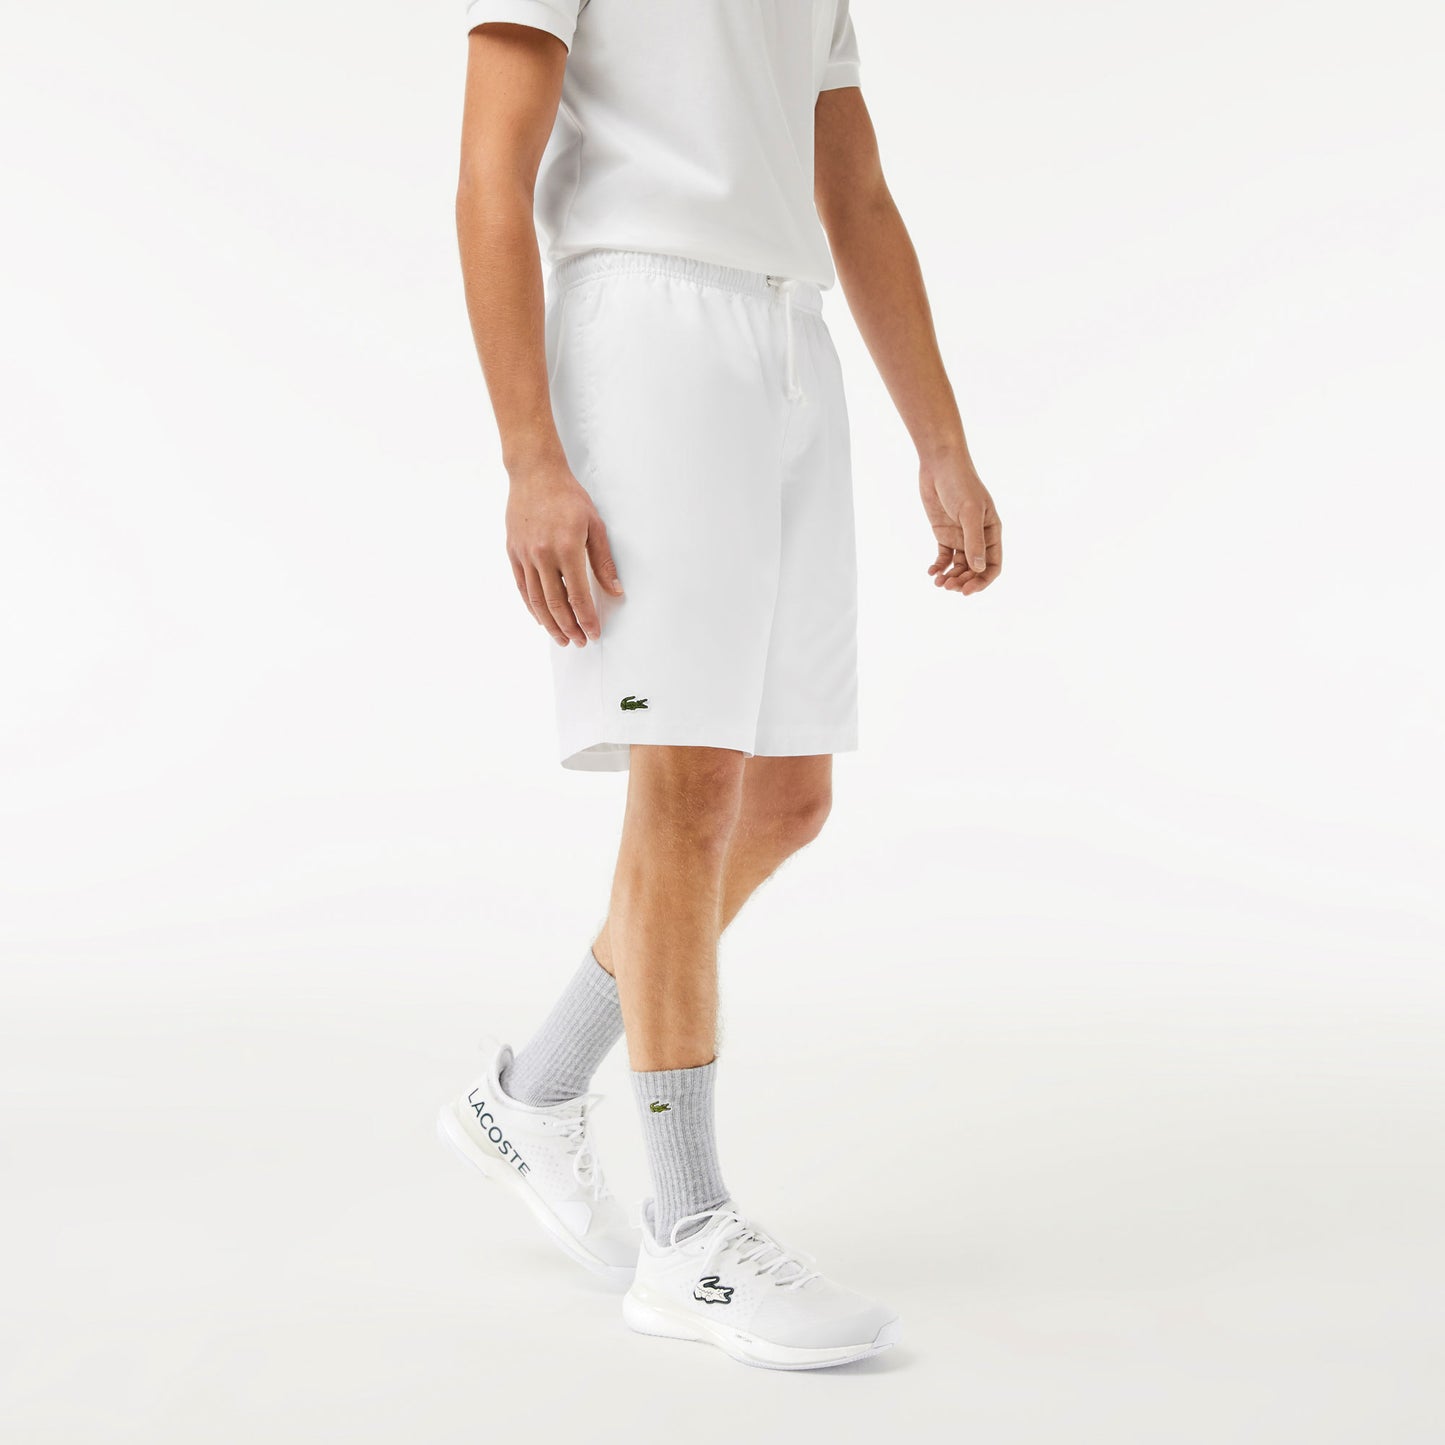 Lacoste Core Men's Tennis Shorts White (1)